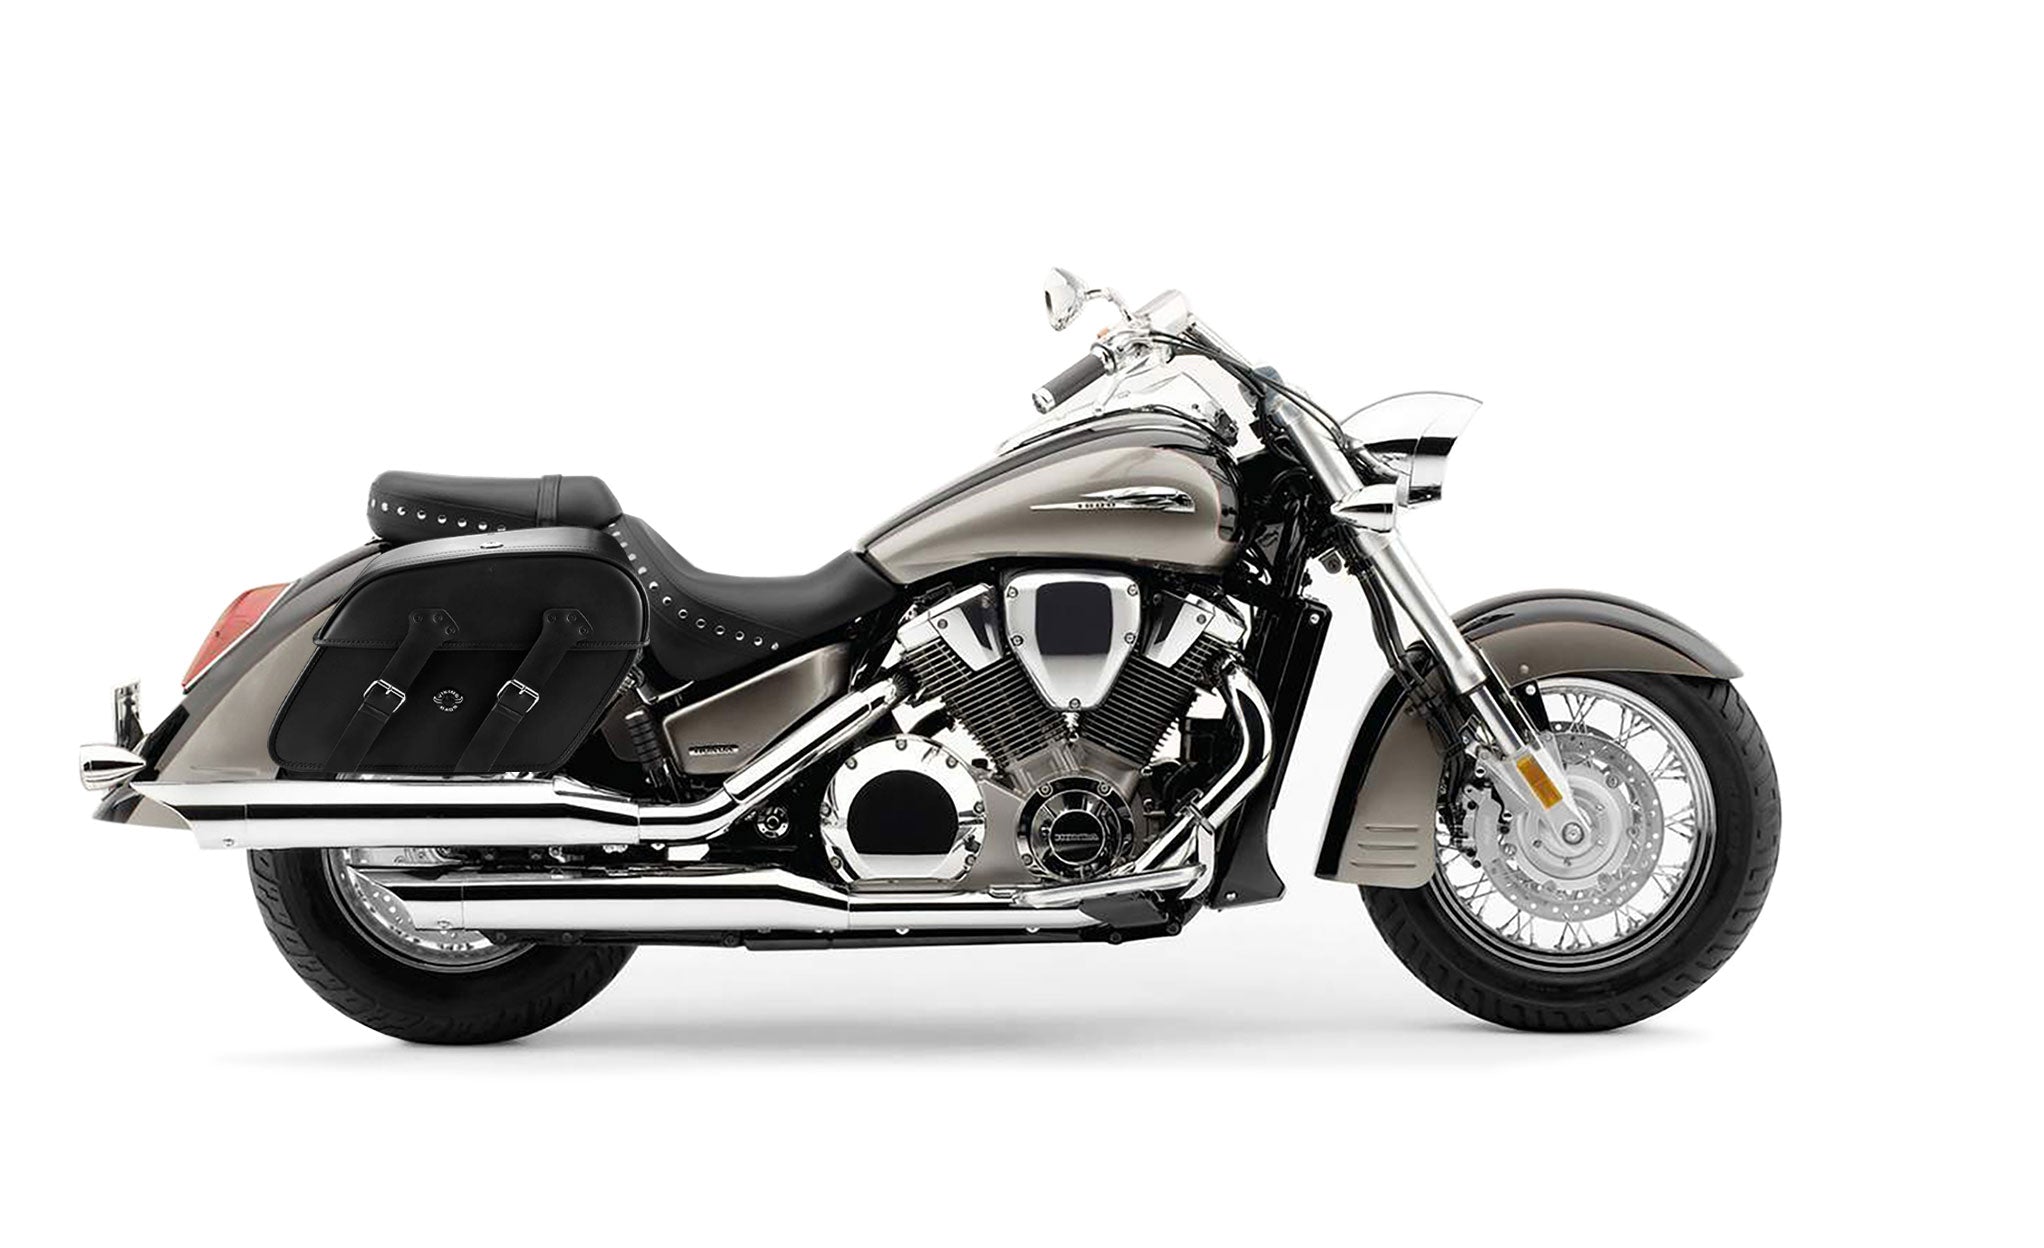 Viking Raven Extra Large Honda Vtx 1800 S Shock Cut Out Leather Motorcycle Saddlebags on Bike Photo @expand